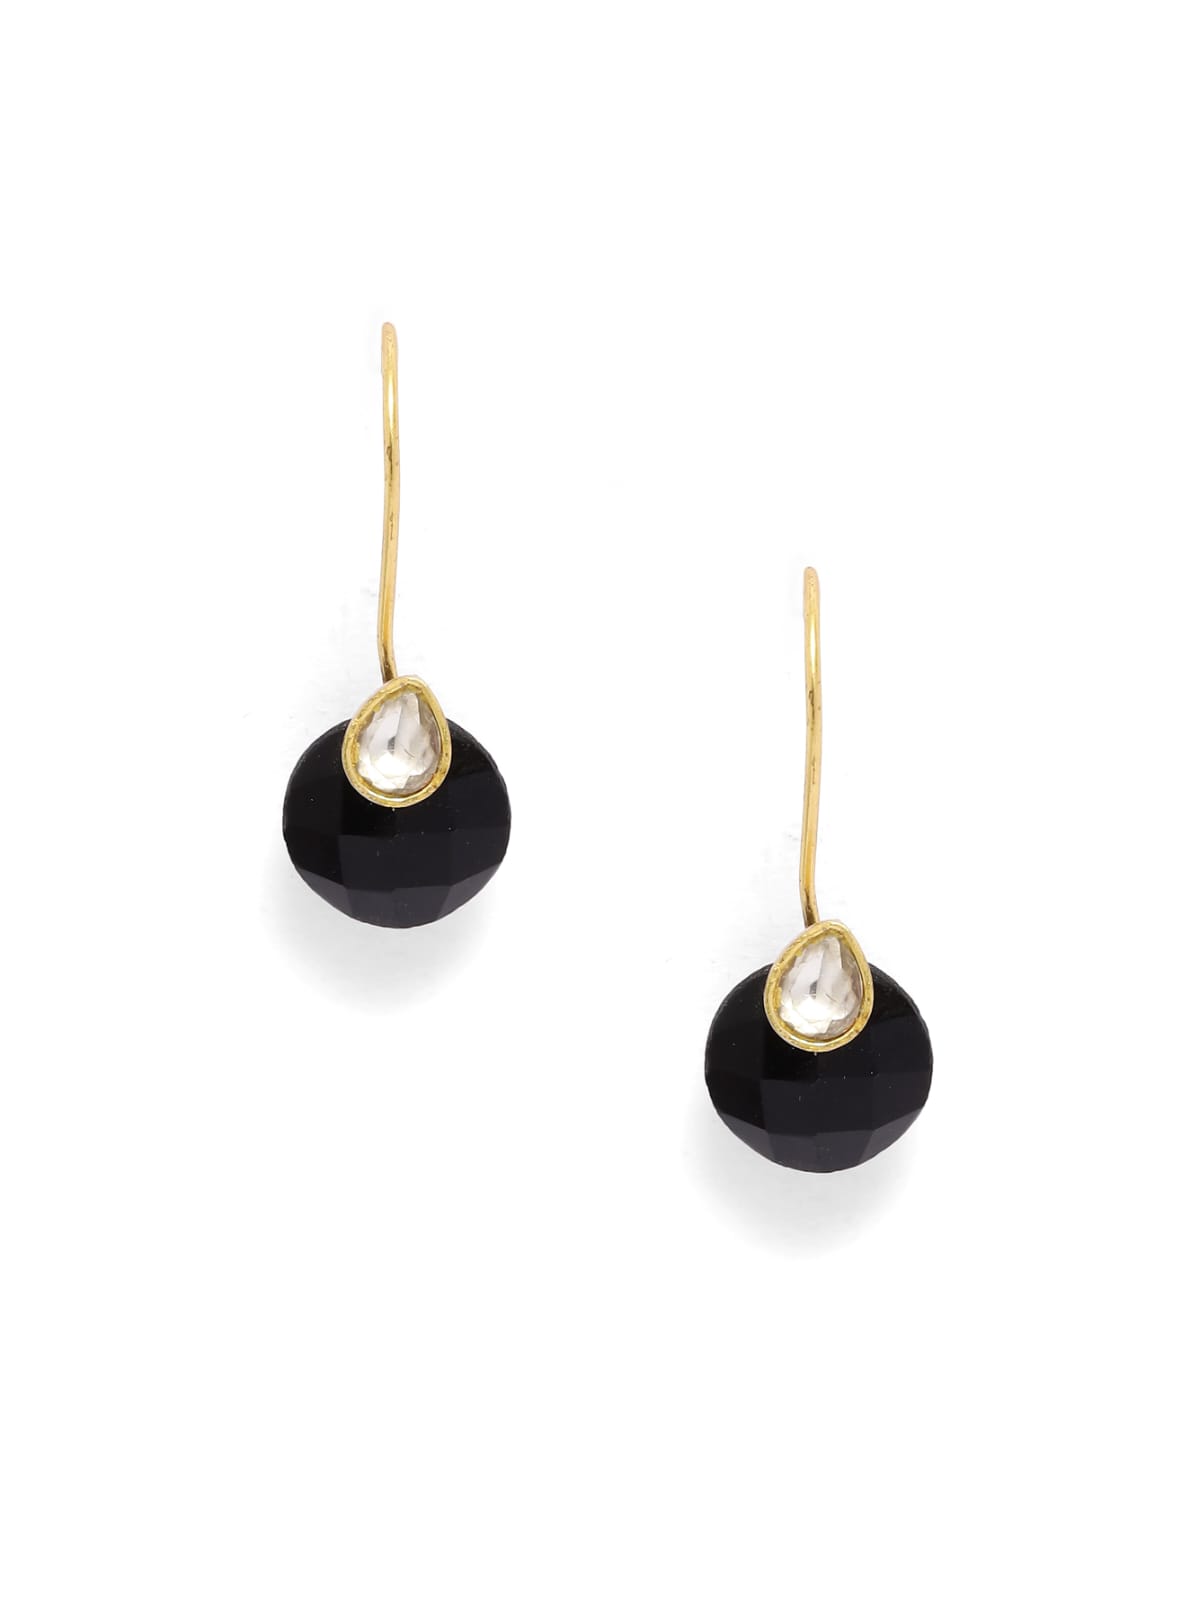 Black Onyx with Pearl hook earrings.